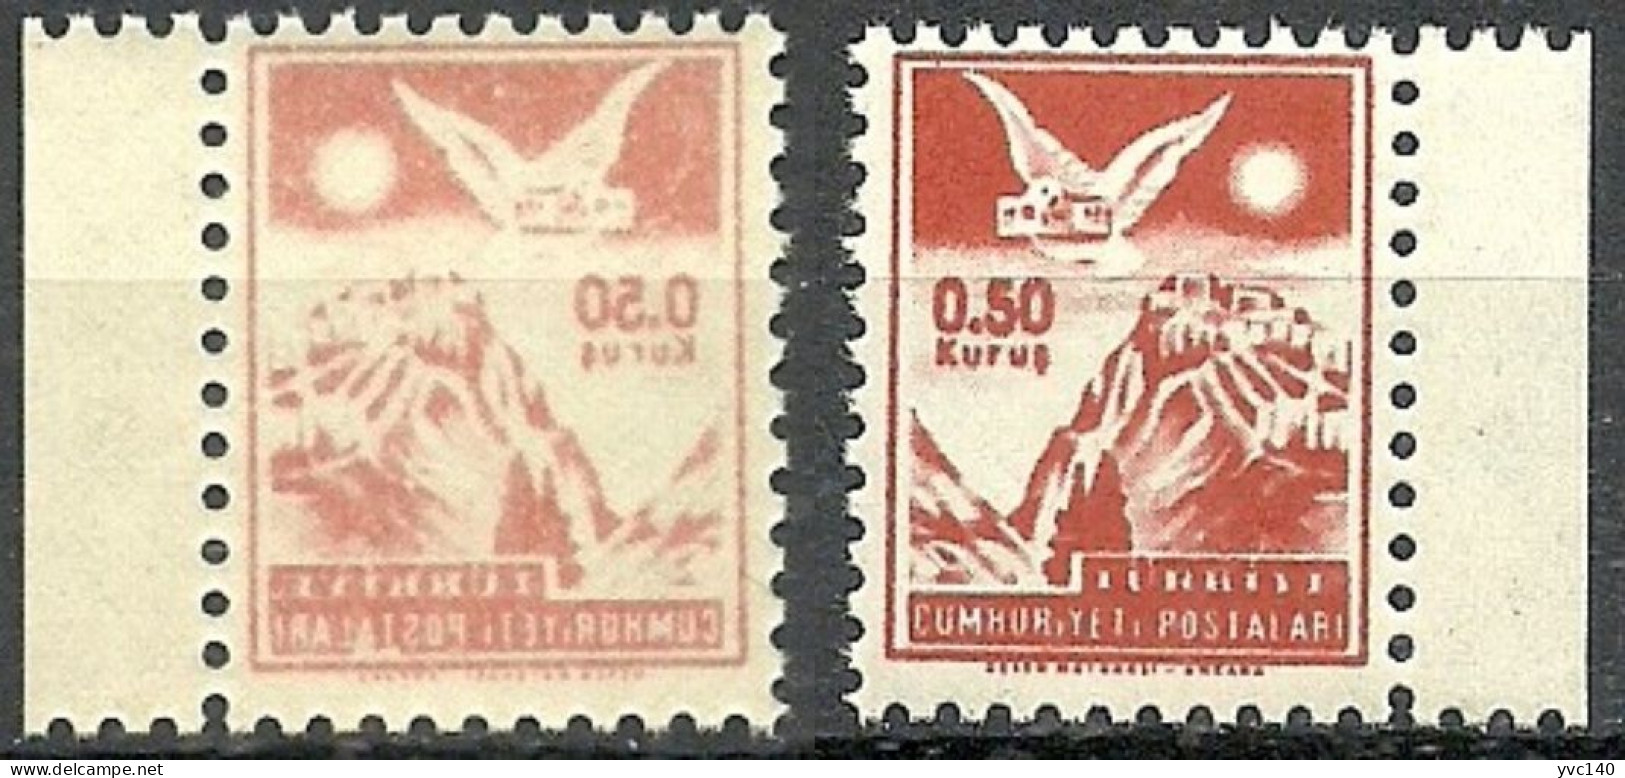 Turkey; 1954 "0.50 Kurus" Postage Stamp "Abklatsch Print" - Ungebraucht